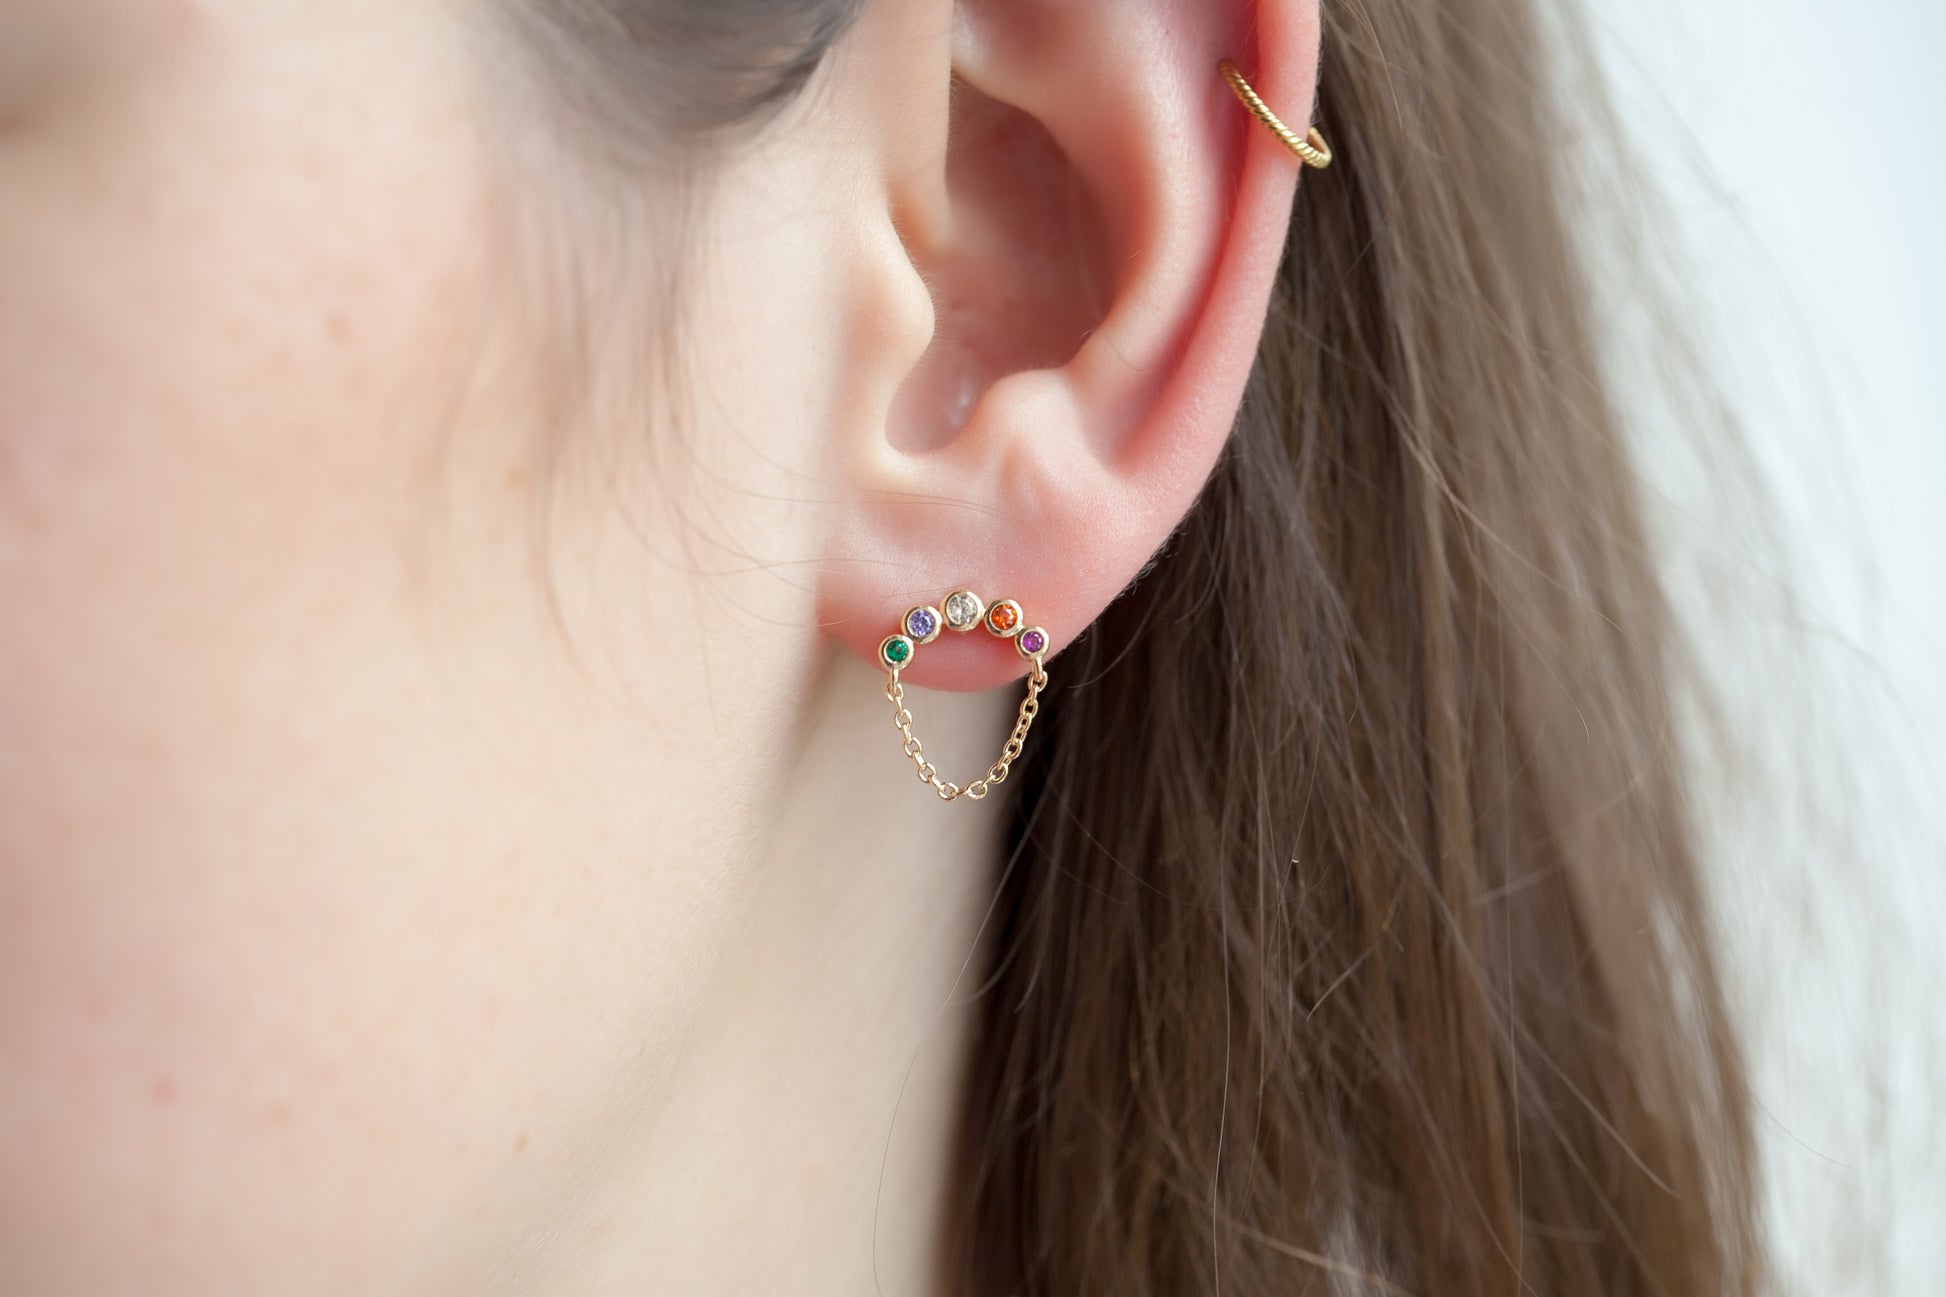 Ohrringe mit bunten Steinen und Kette vergoldet